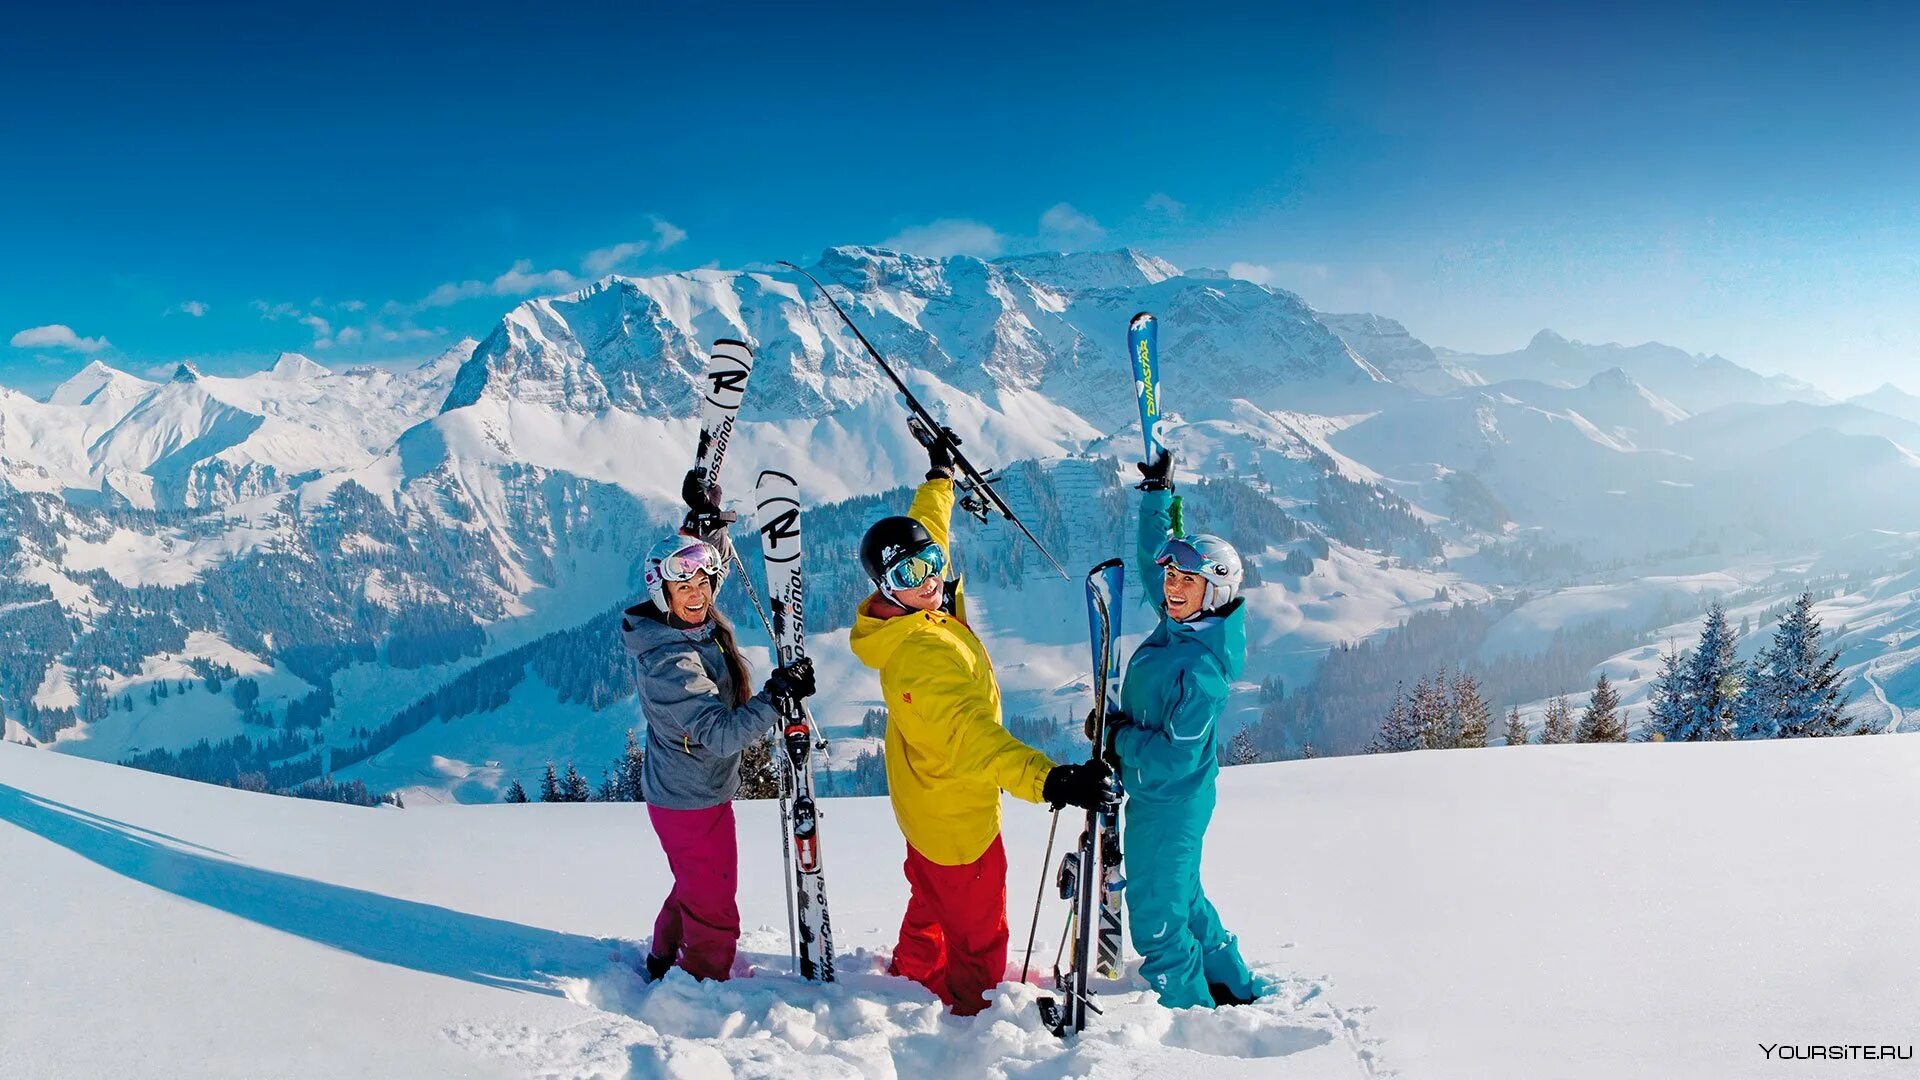 Развитие горнолыжных курортов. Свизерленд Швейцария туризм. Горнолыжка в Швейцарии. Адельбоден горнолыжный курорт. Альпы Швейцария курорты.